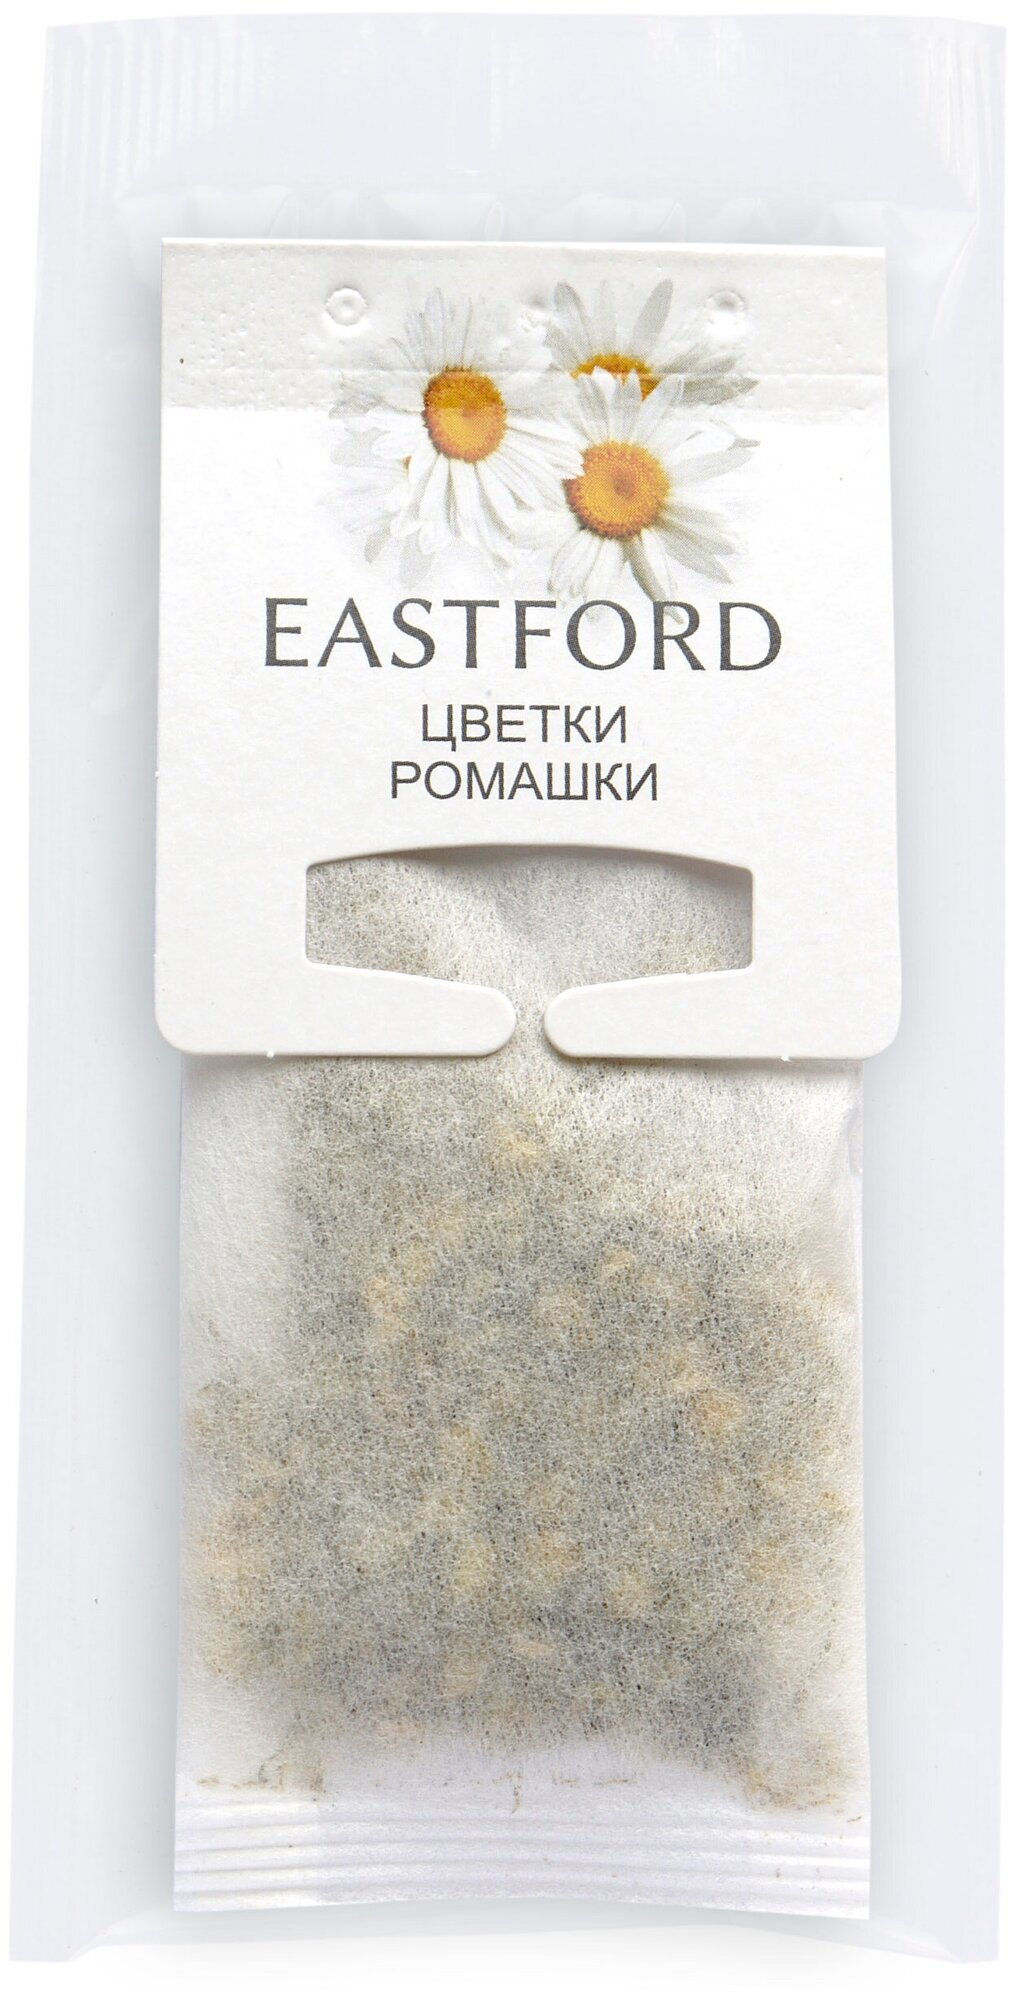 Чай «EASTFORD» Цветки ромашки 12 макси-фильтр пакетов по 1,5 грамма - фотография № 3